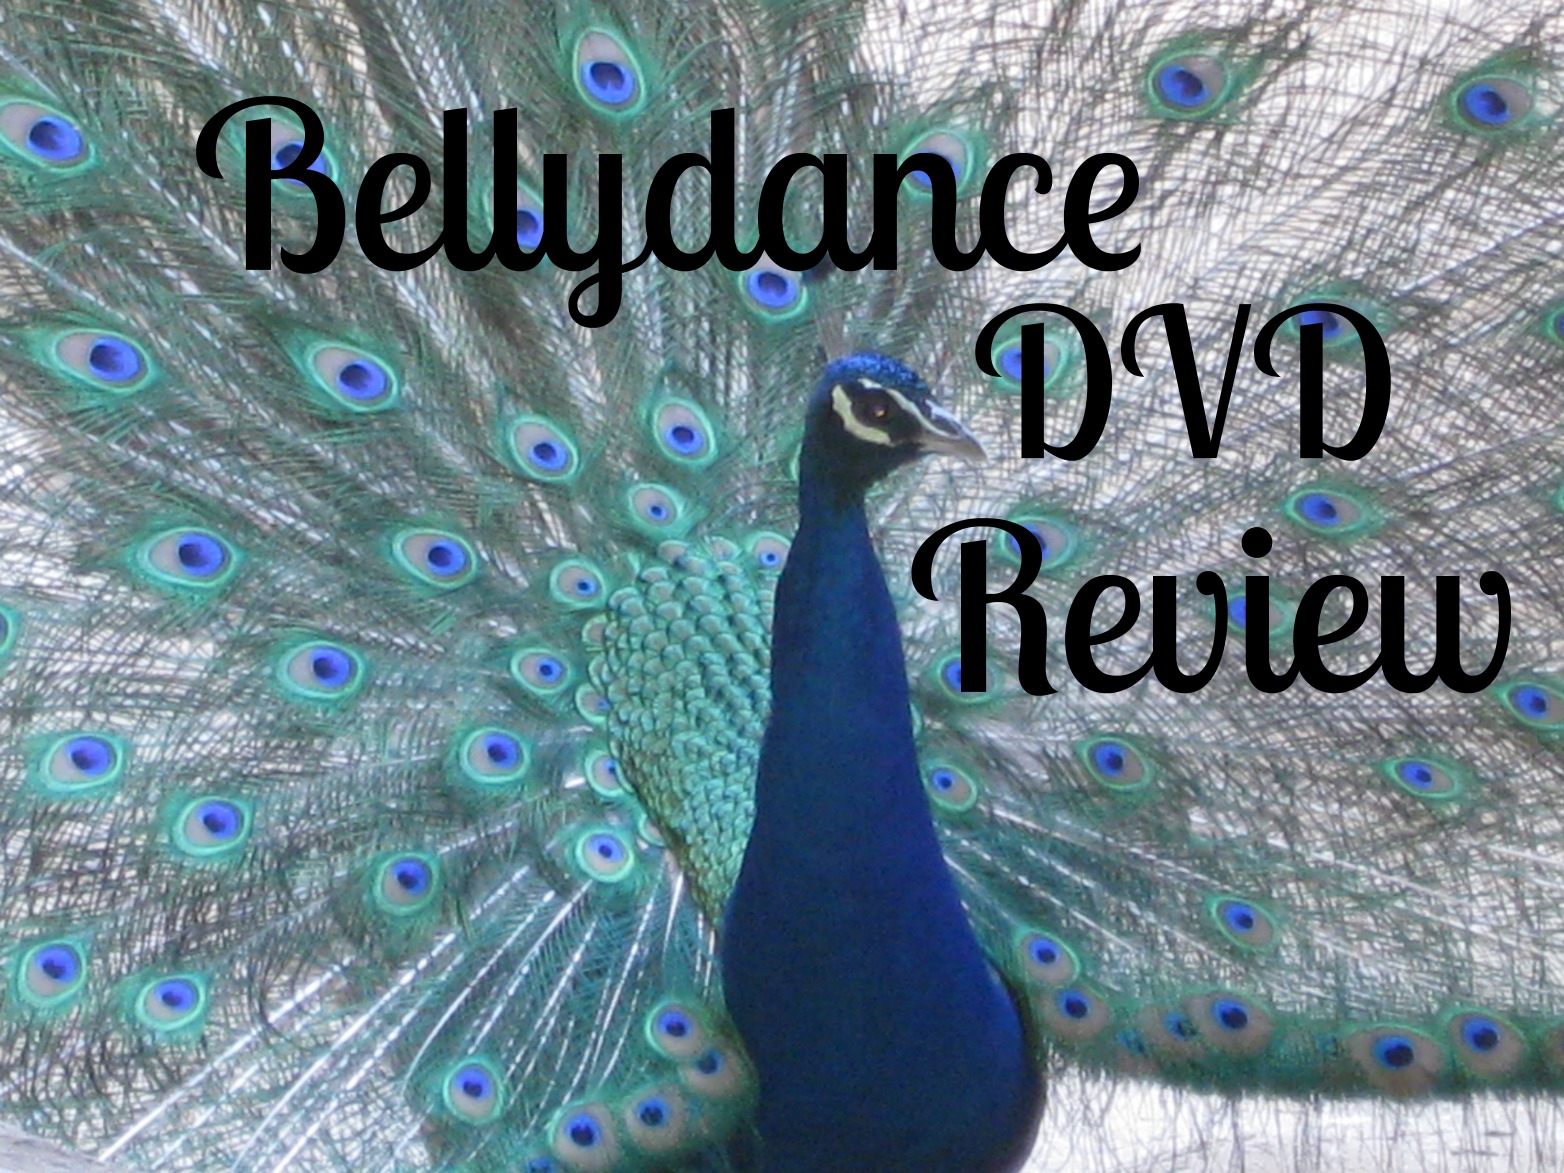 Bellydance DVD Reviews